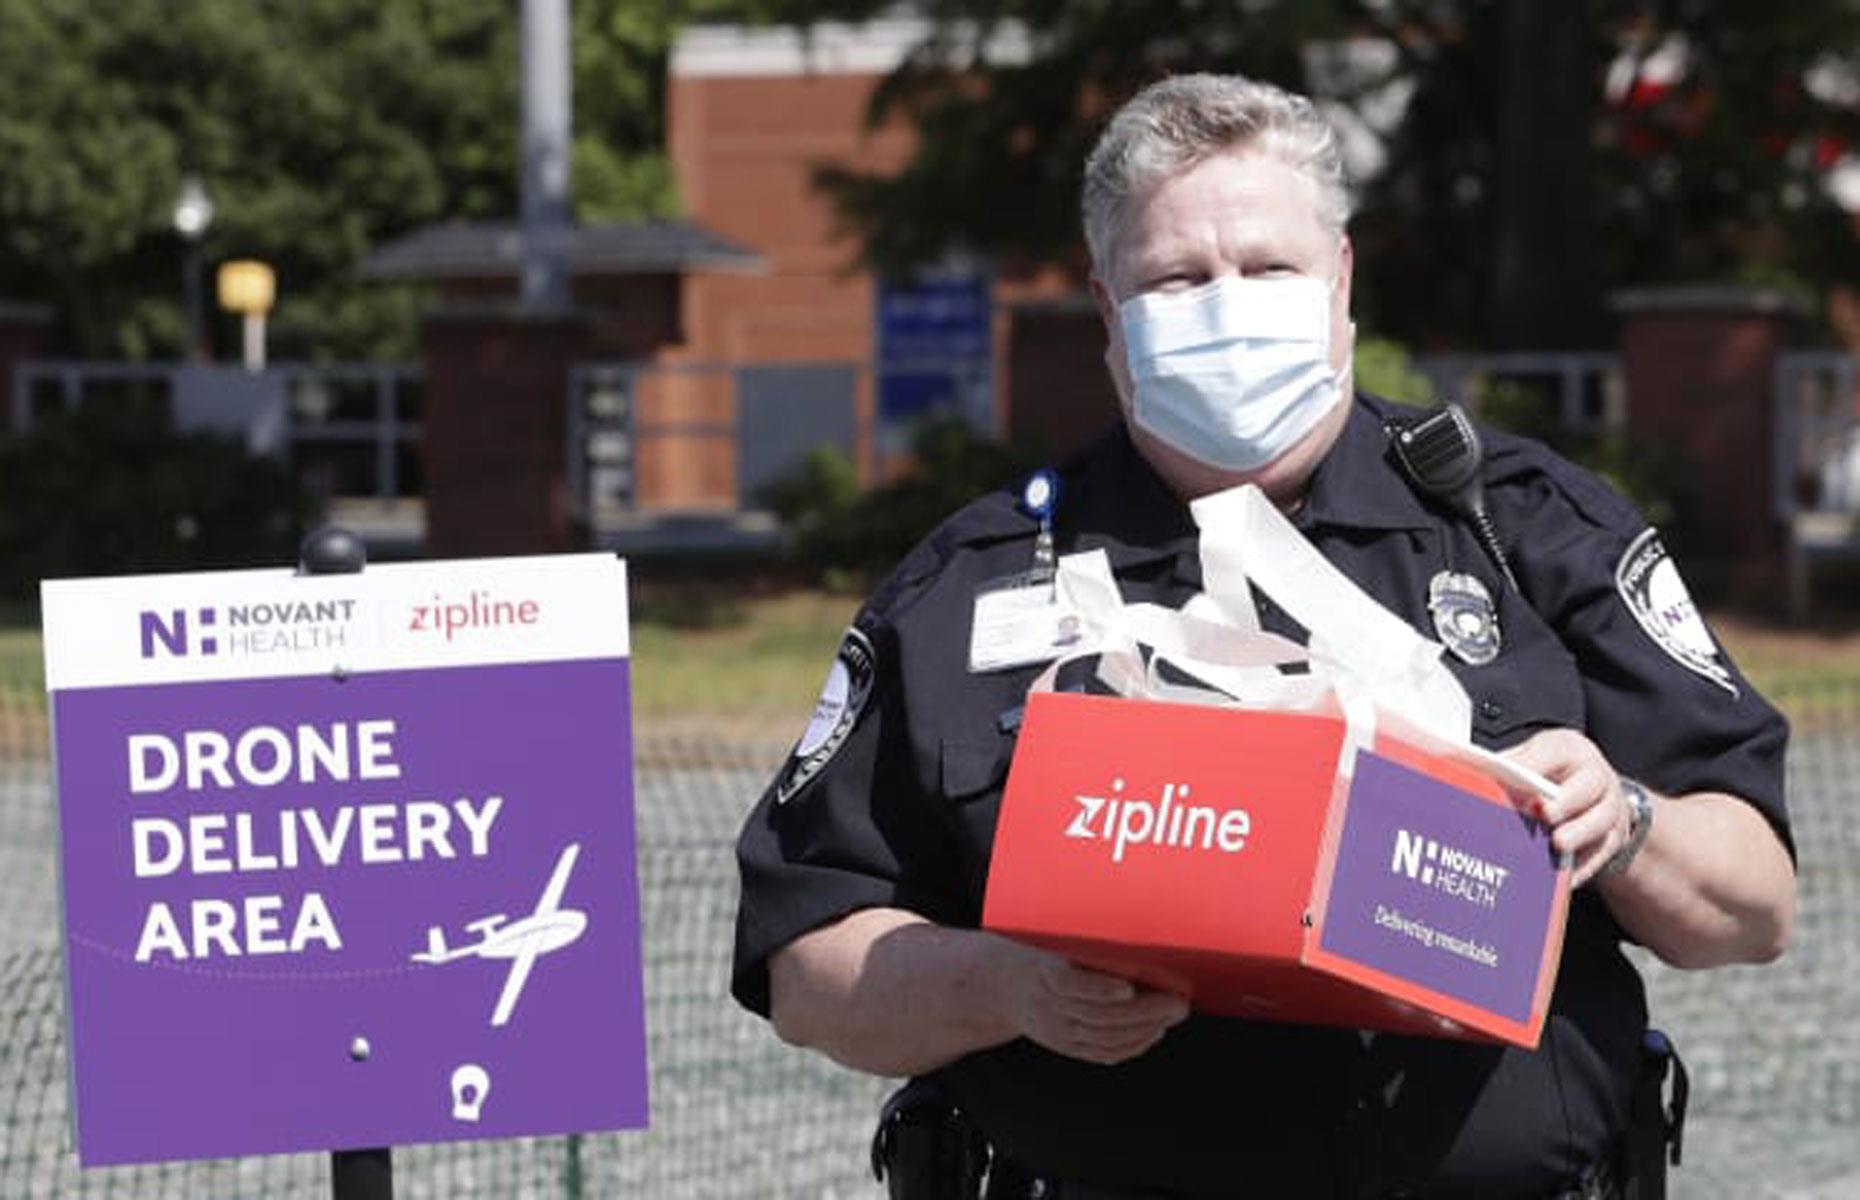 Zipline's drones are now delivering medicines